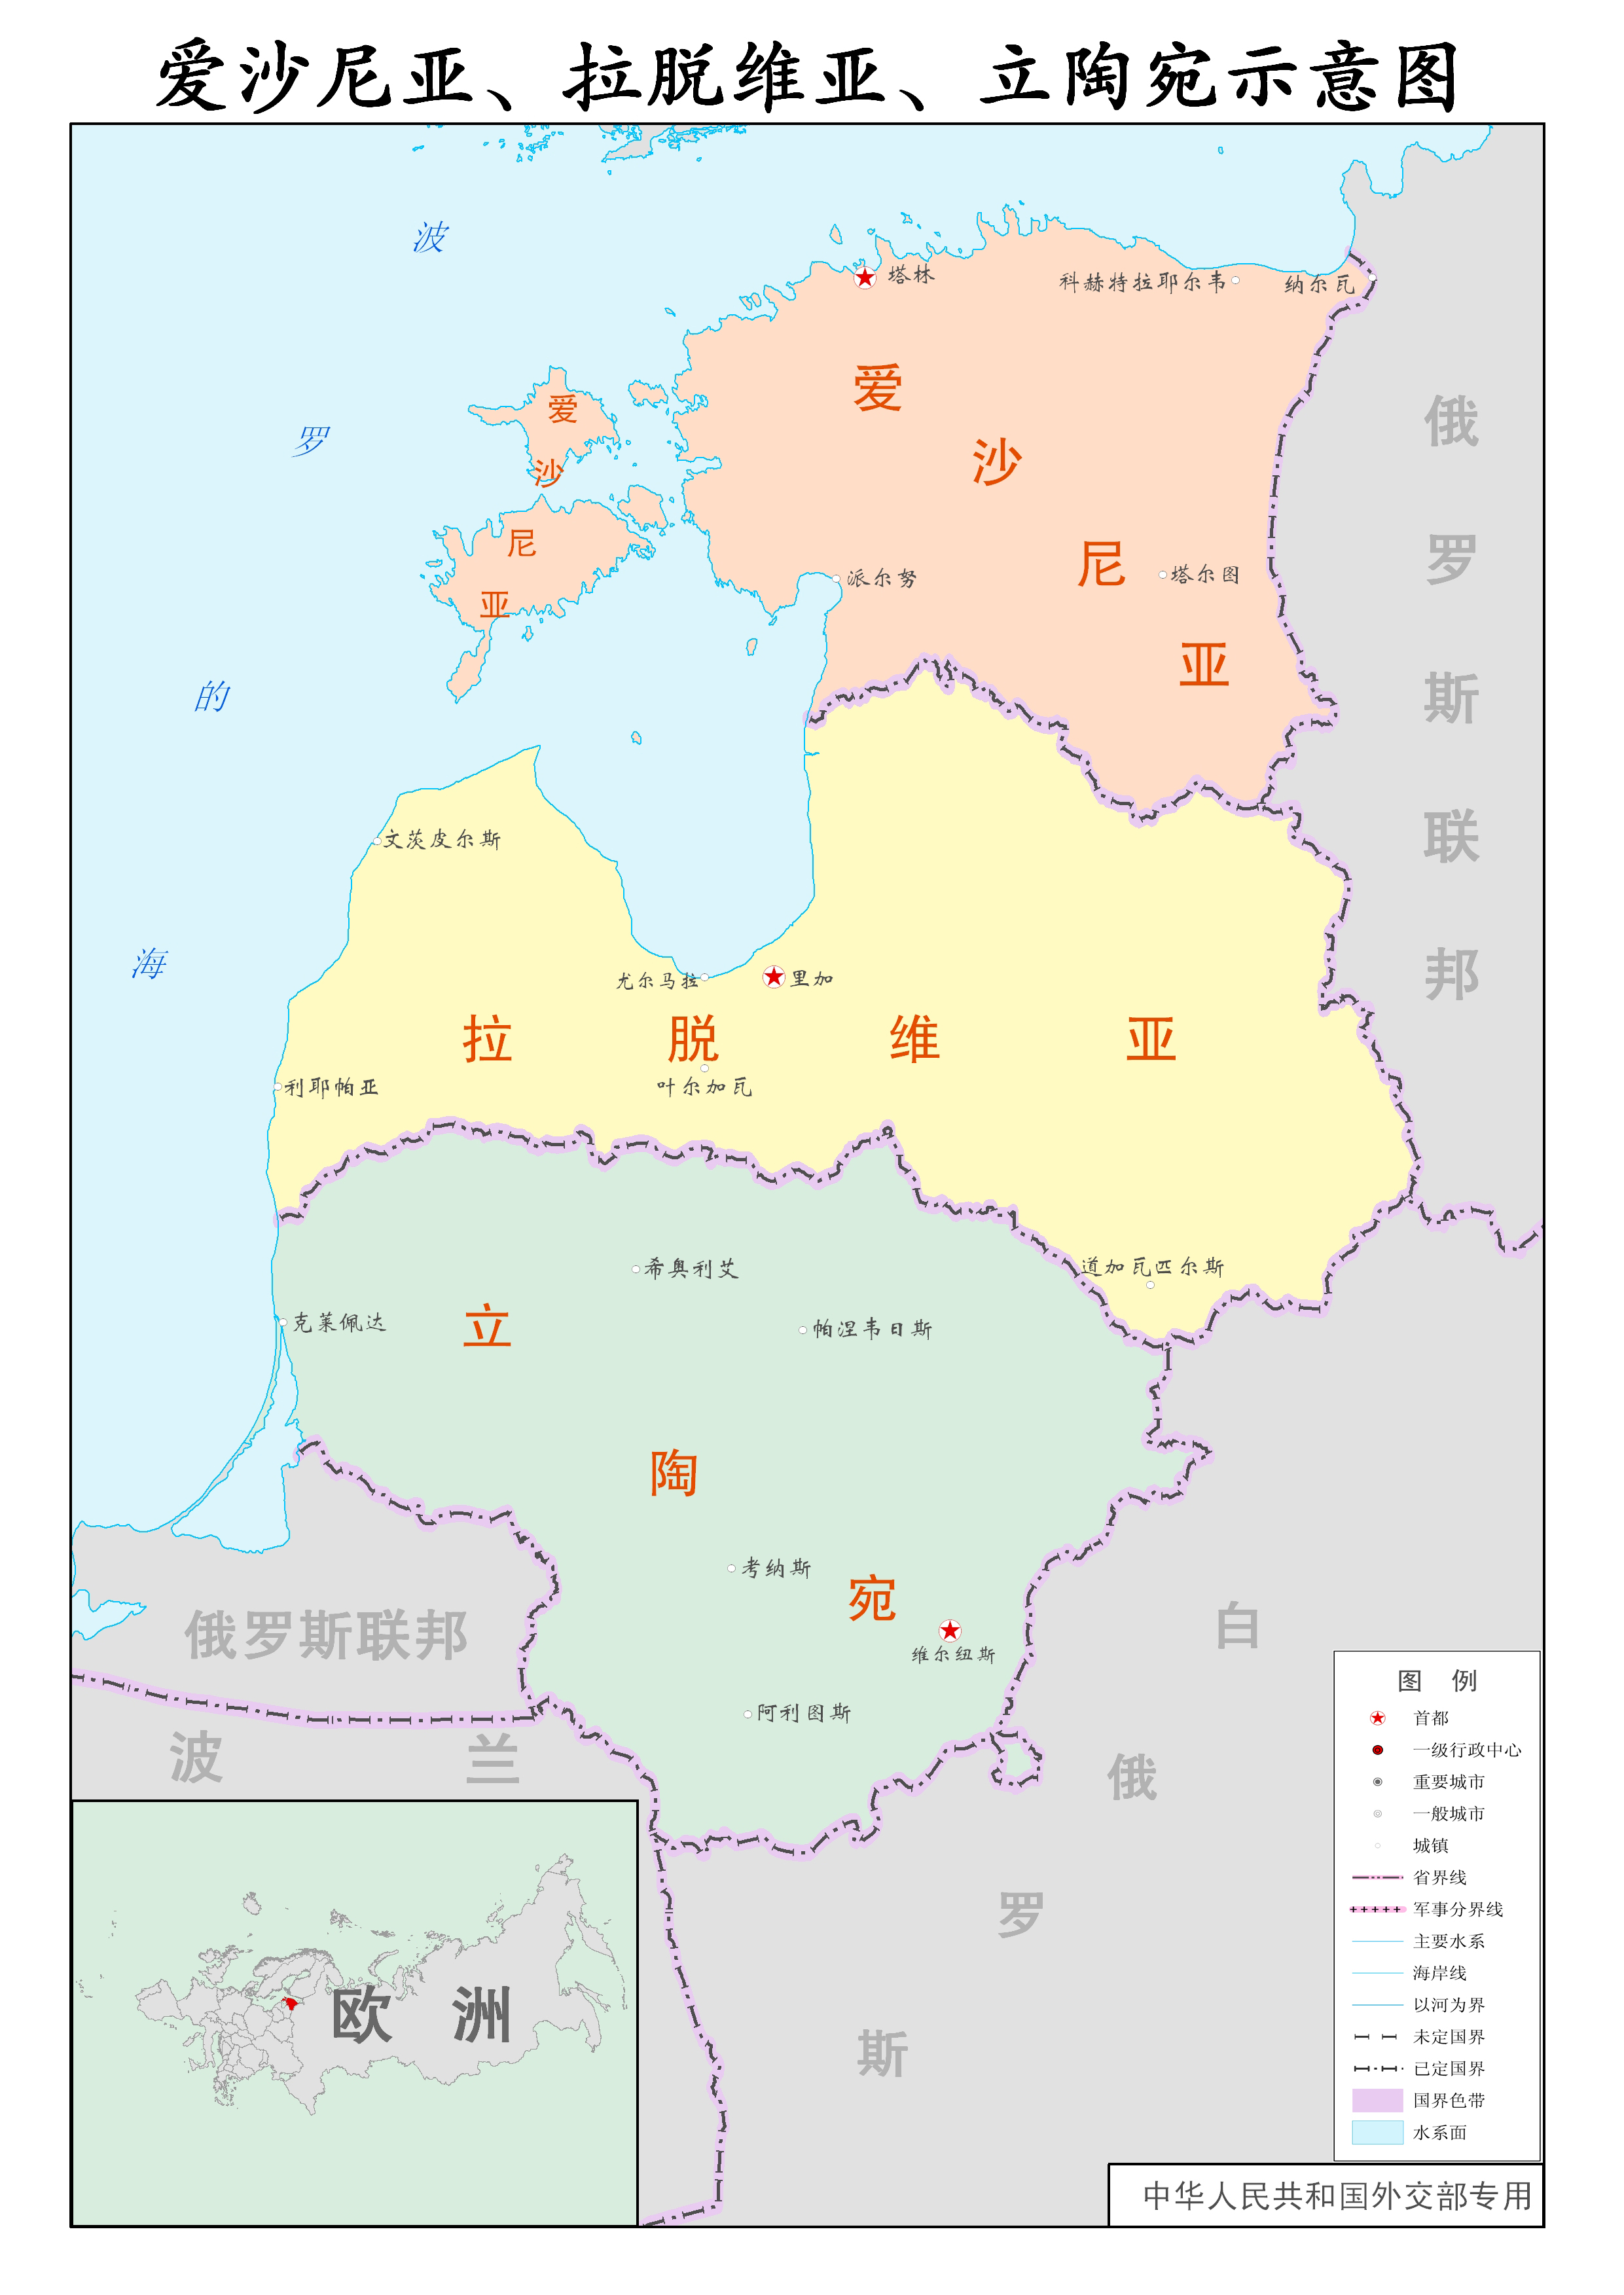 立陶宛行政示意图_立陶宛地图库